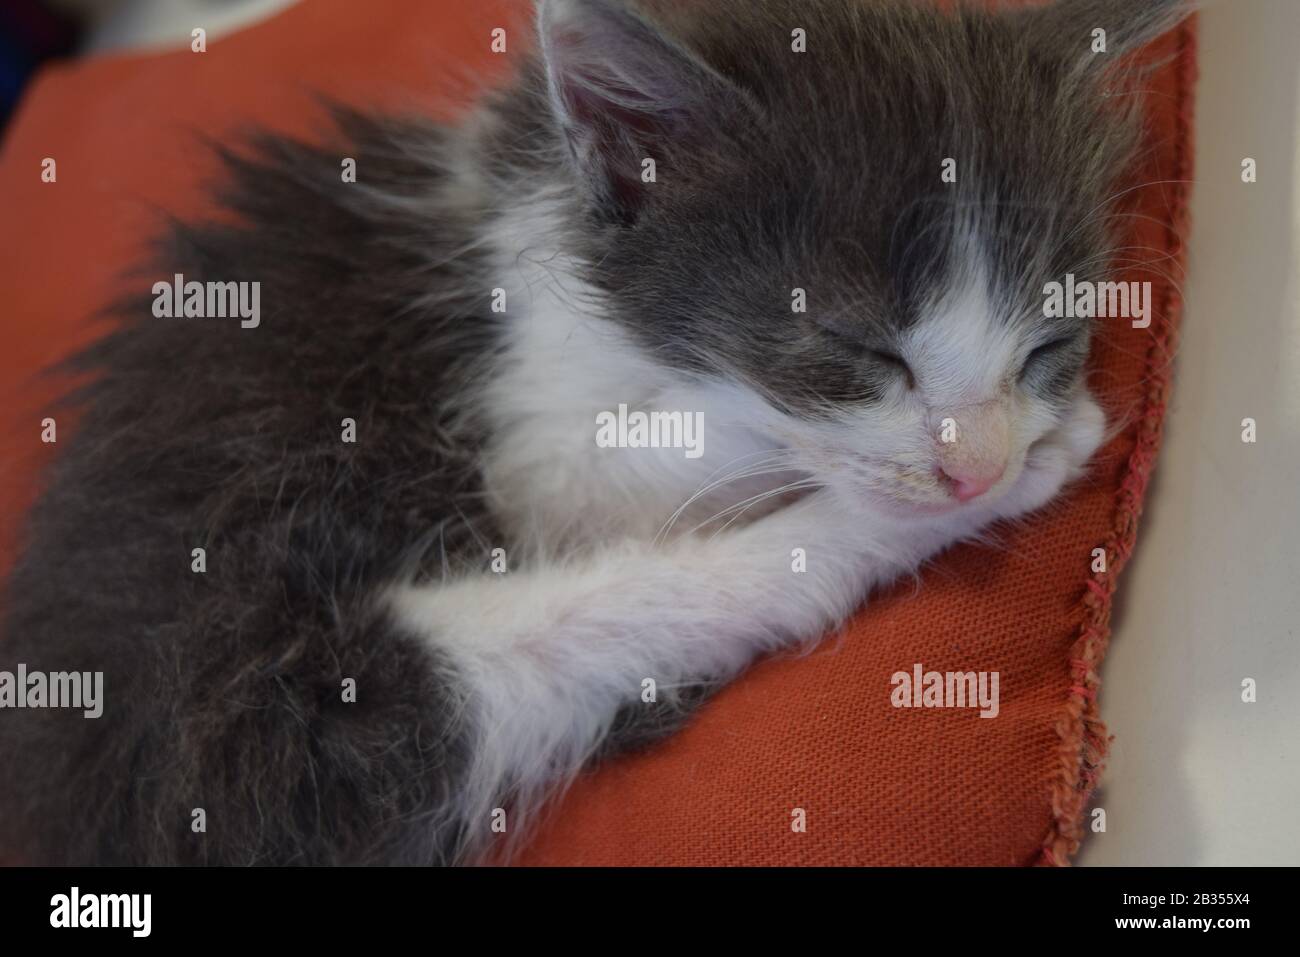 Gato recién nacido Stock Photo